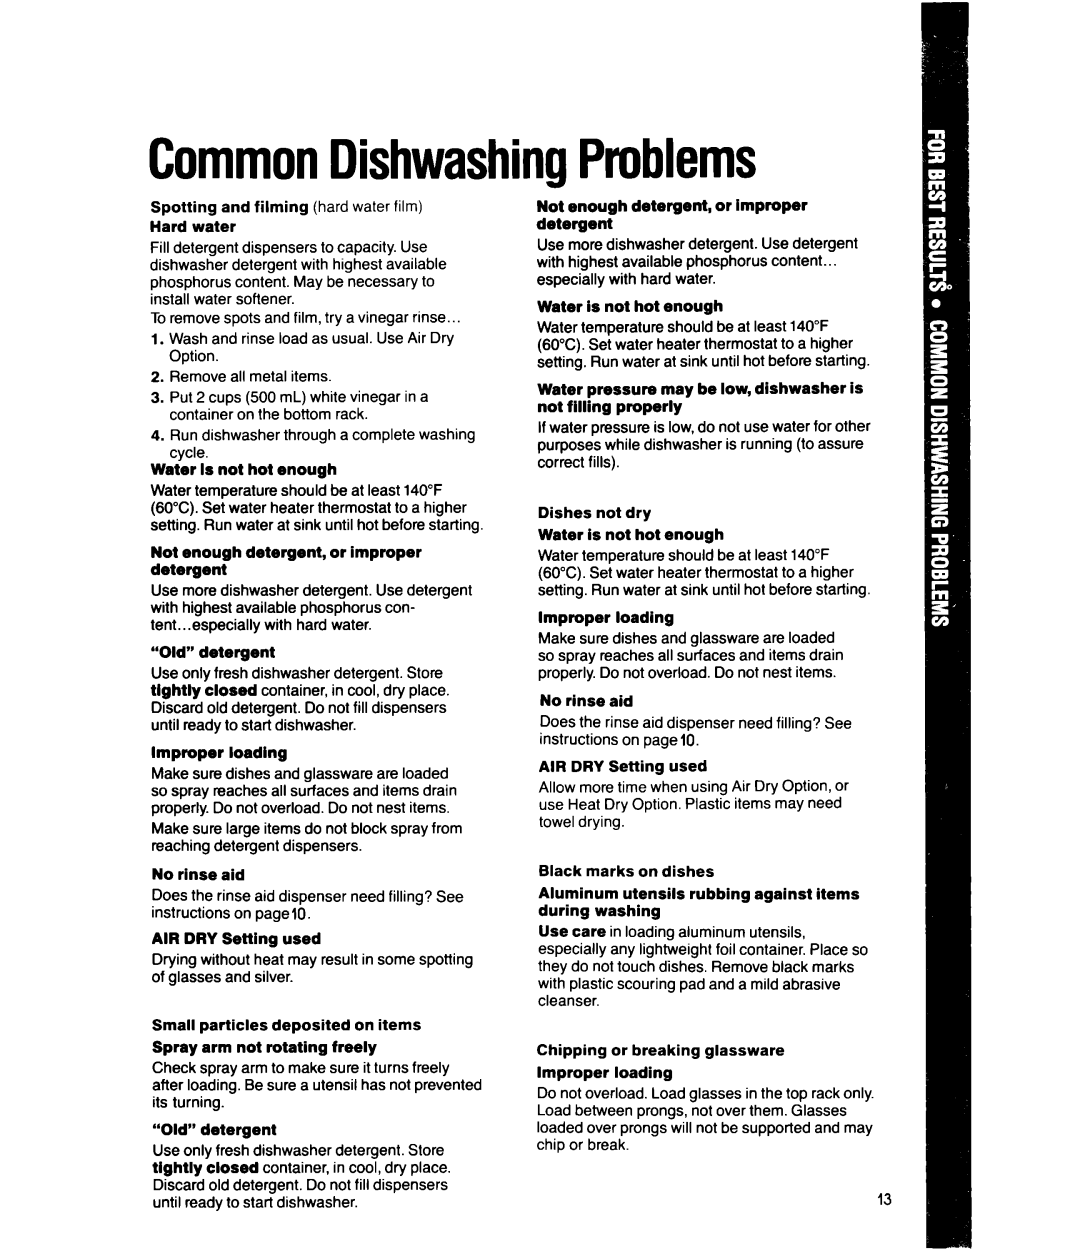 Whirlpool DU500OXW, DU4099XX manual CommonDishwashingProblems 